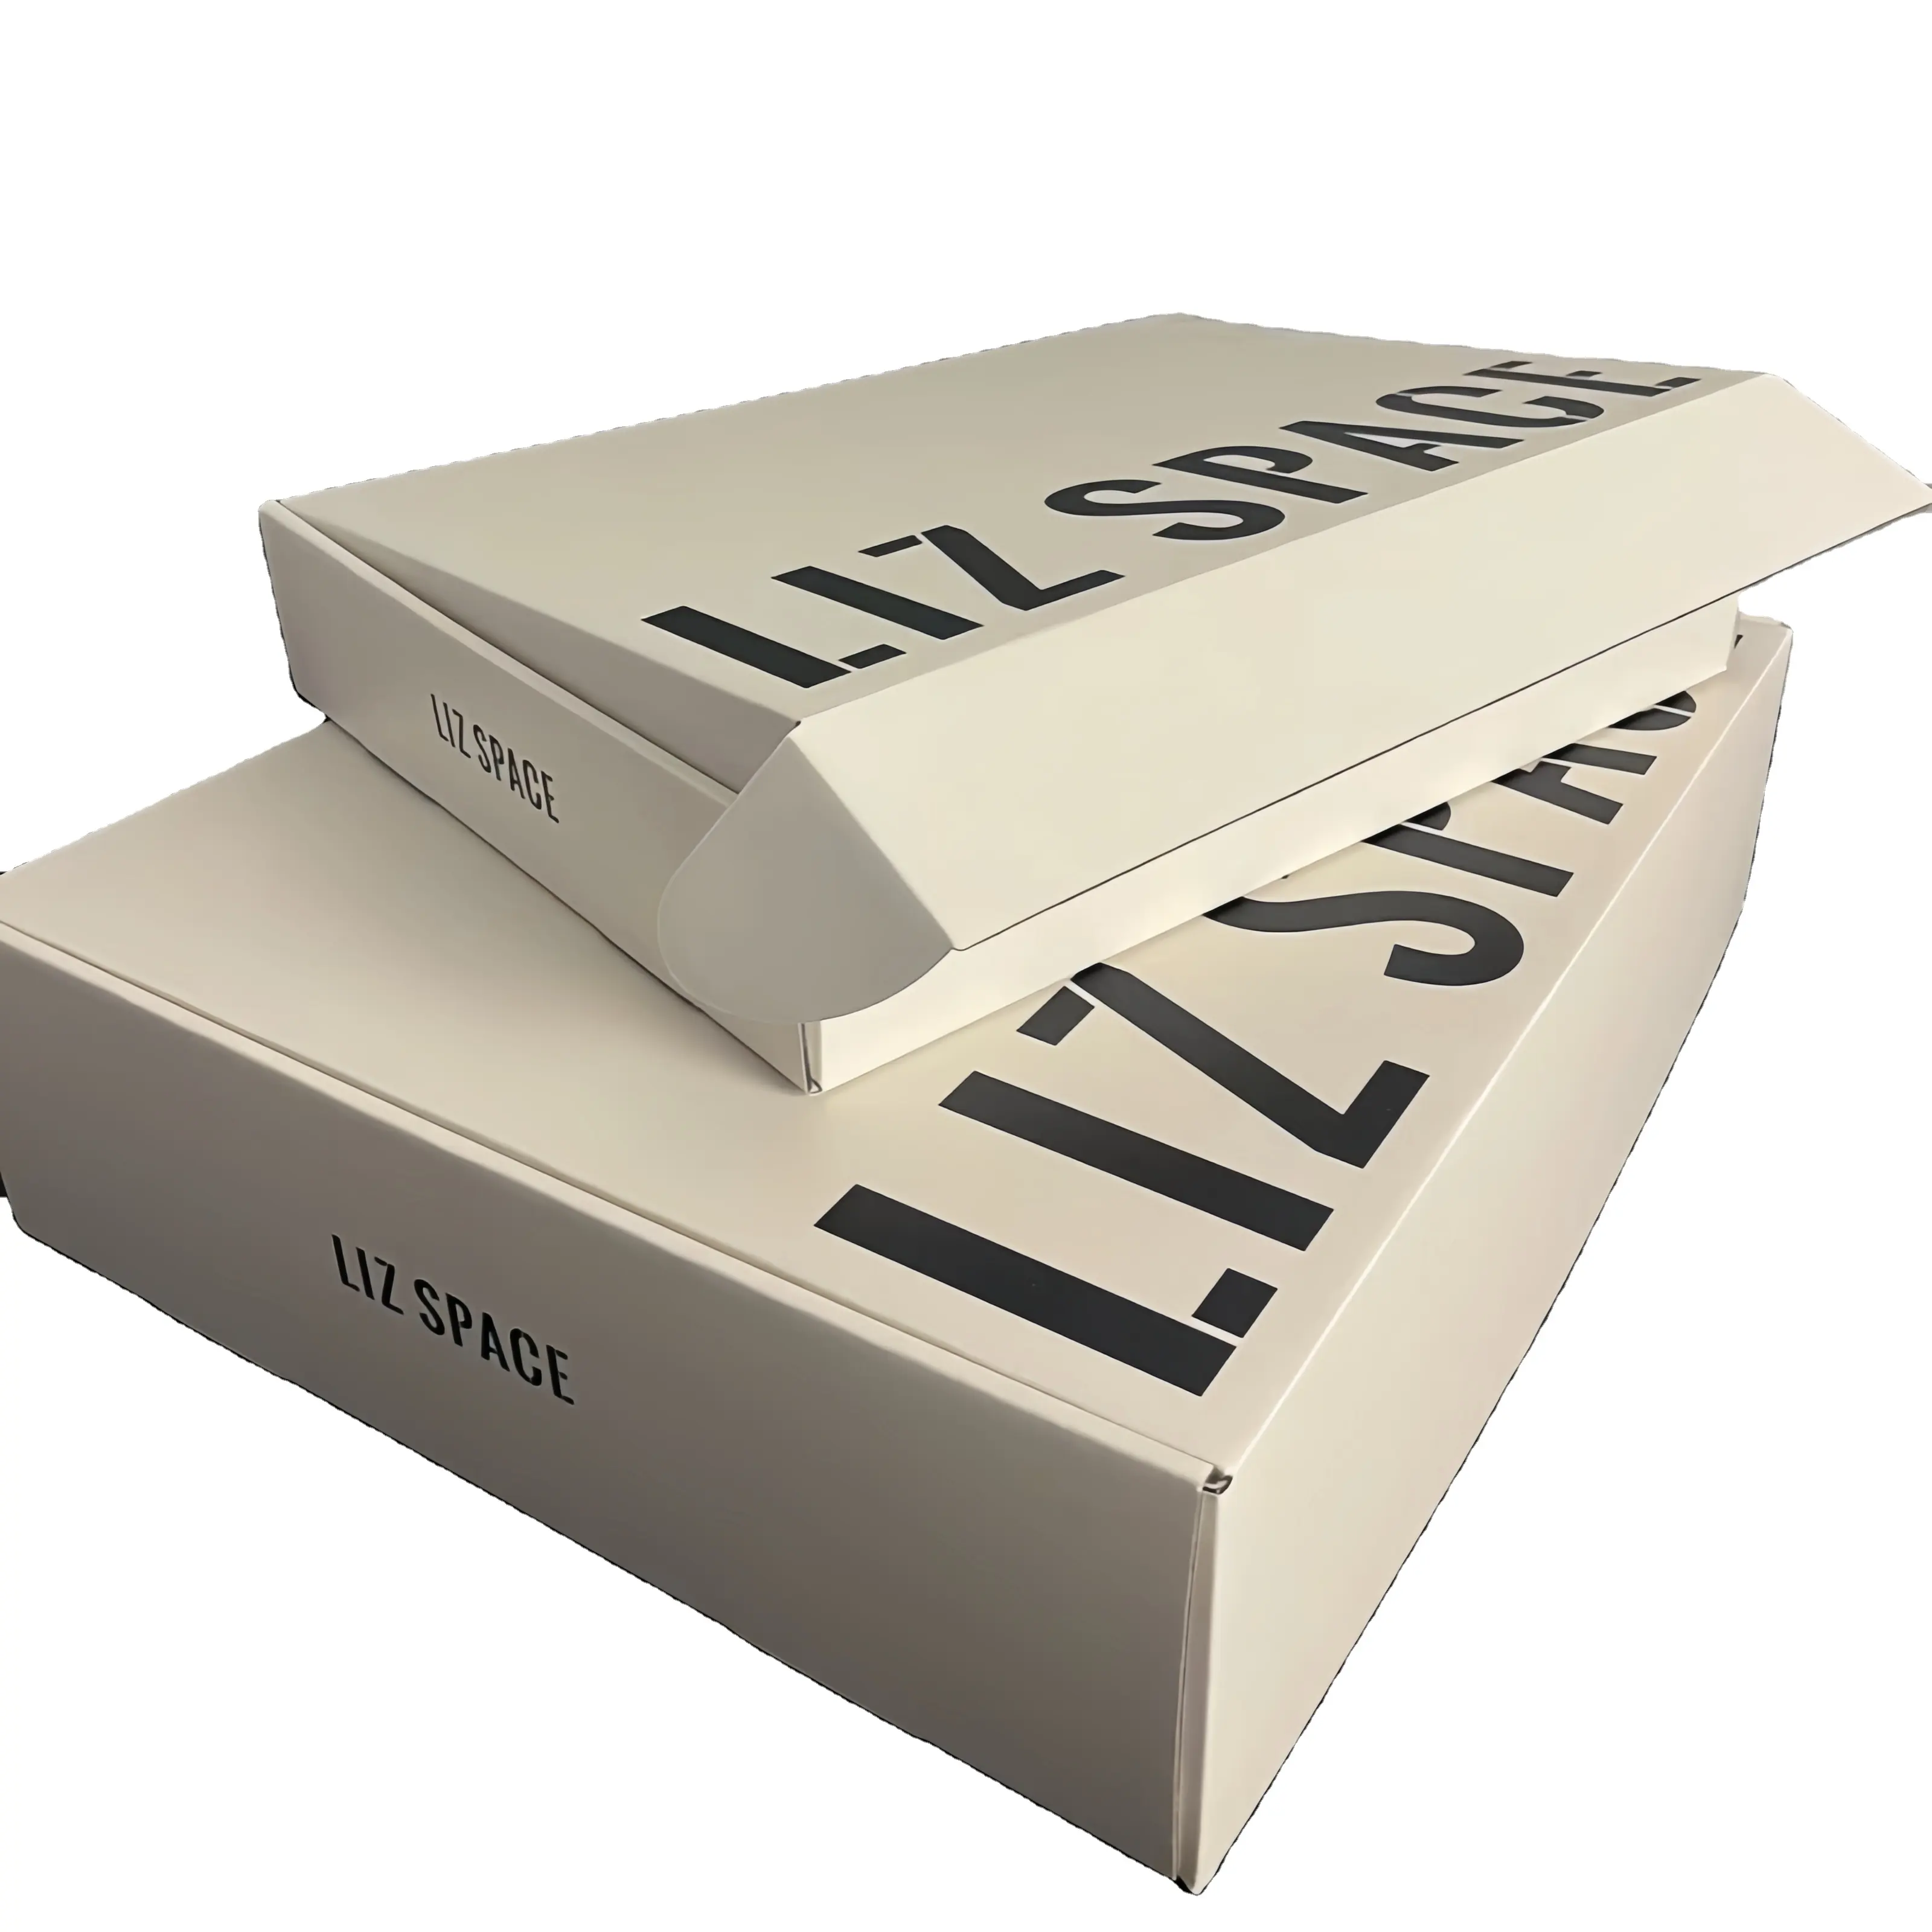 Grosir kemasan bergelombang mewah kotak pengiriman logo kustom dapat digunakan kembali kertas lipat kardus pakaian kotak surat